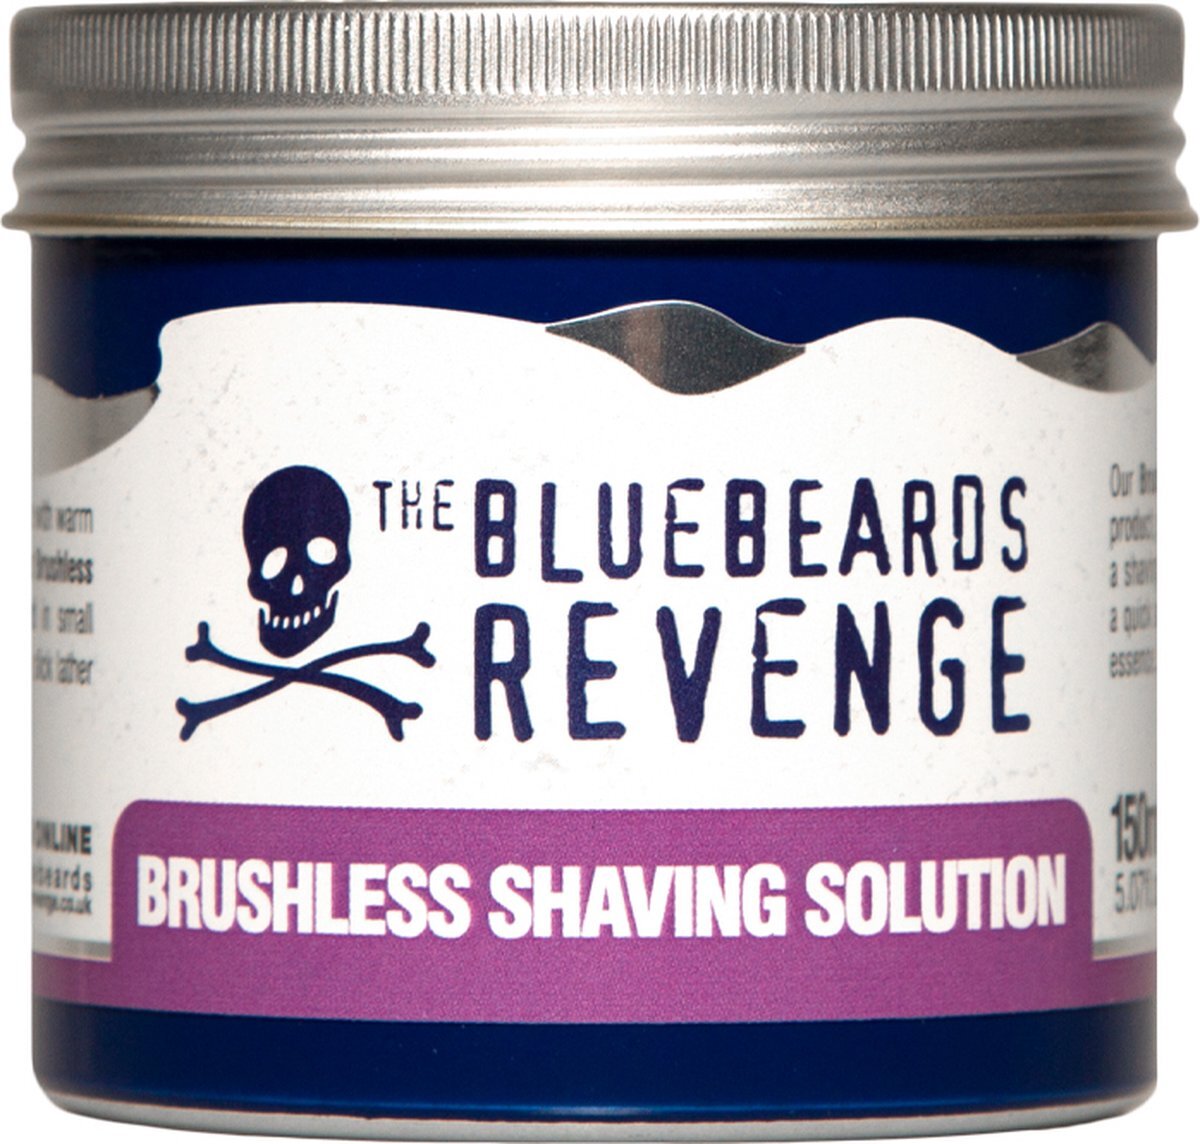 The Bluebeards Revenge Brushless Shaving Solution 150 ml.